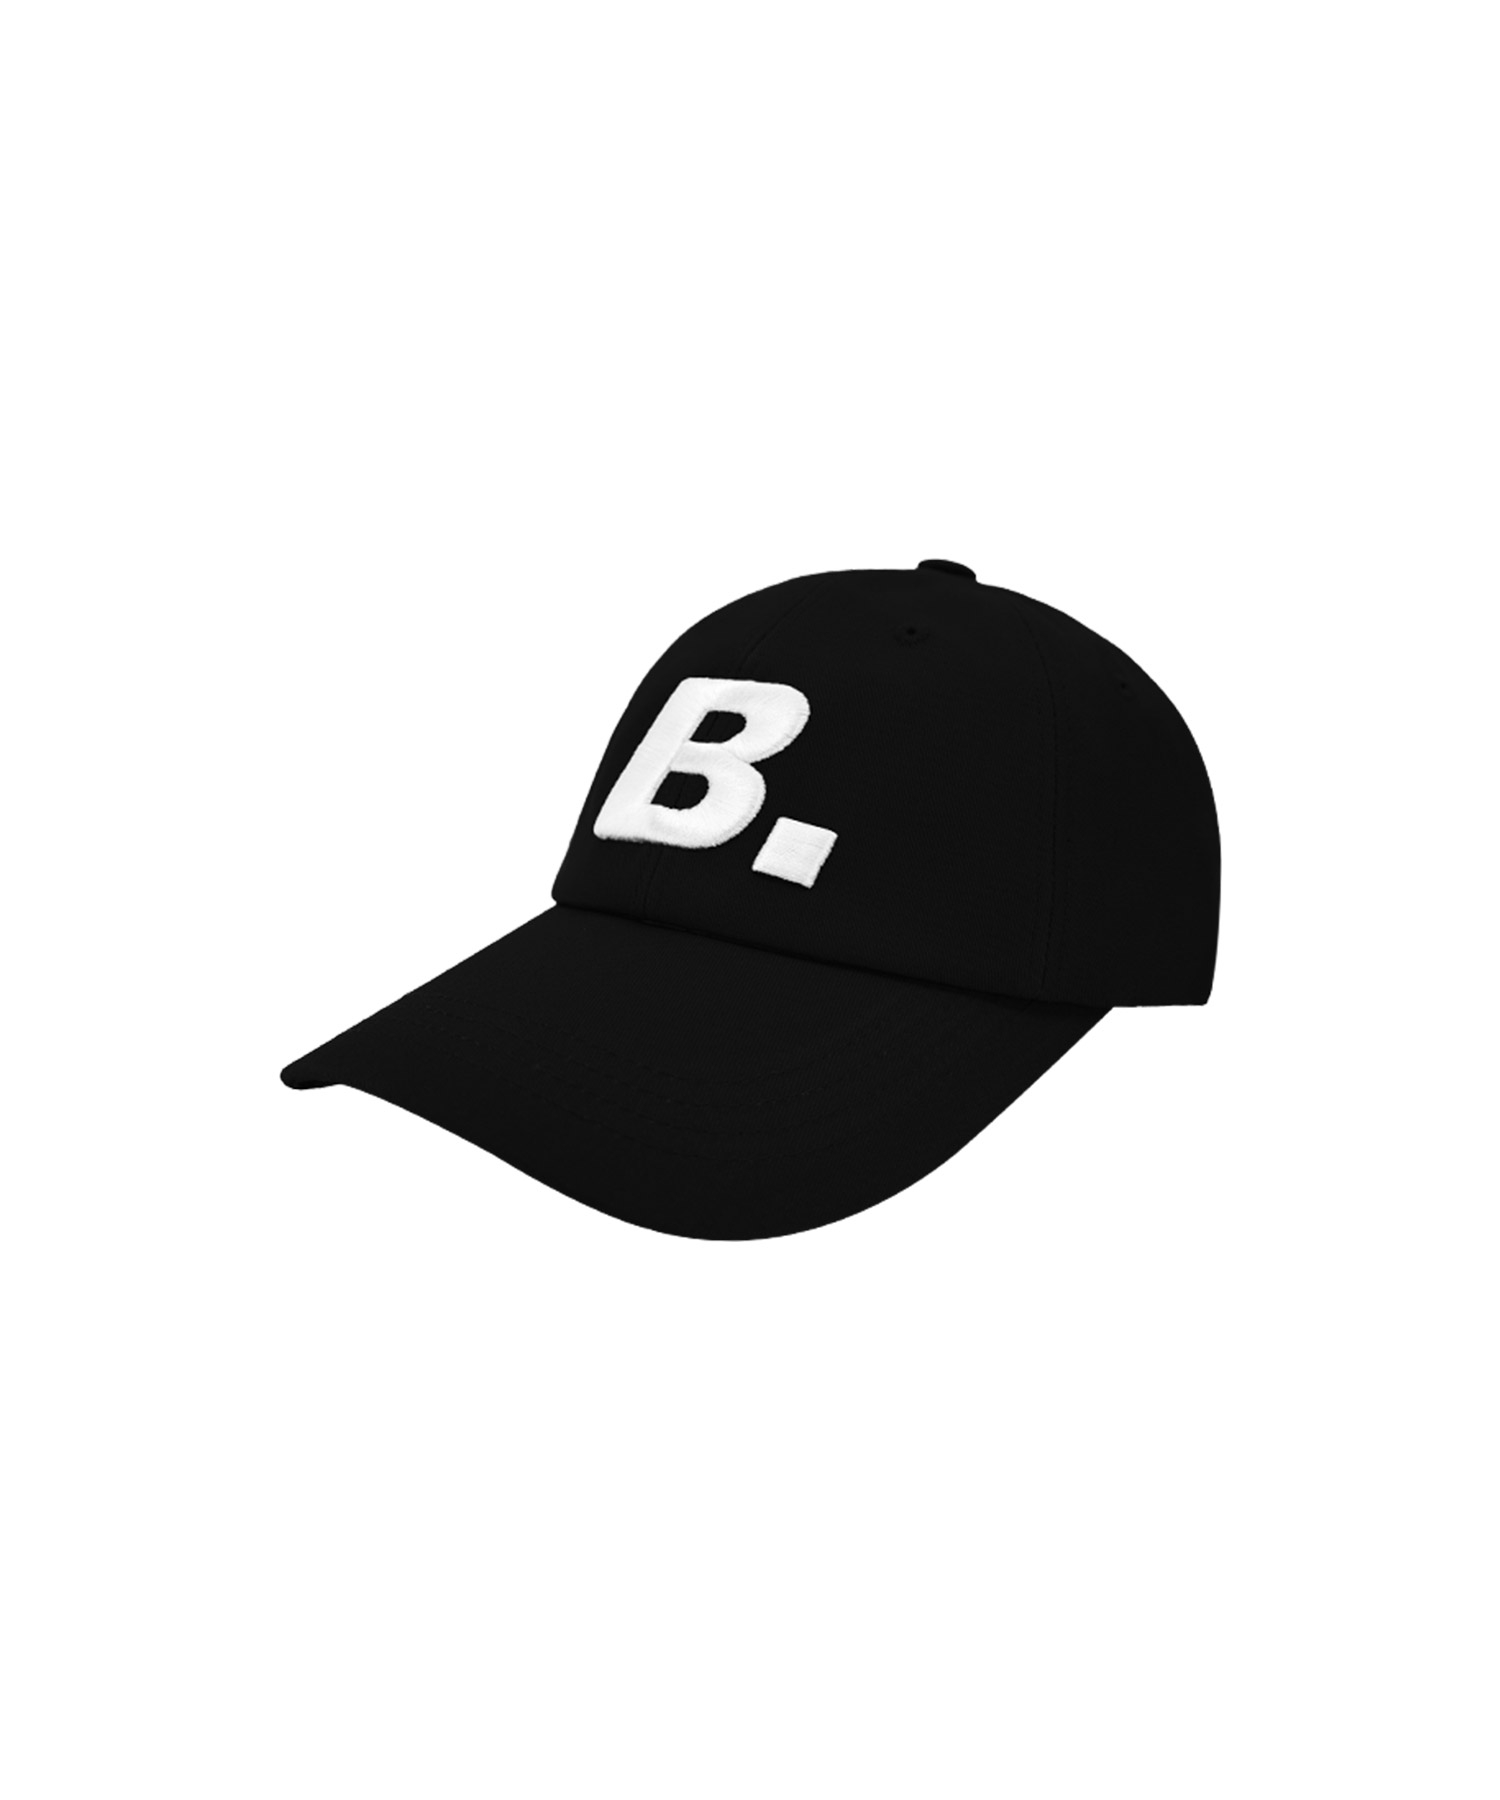 B. CAP [BLACK]